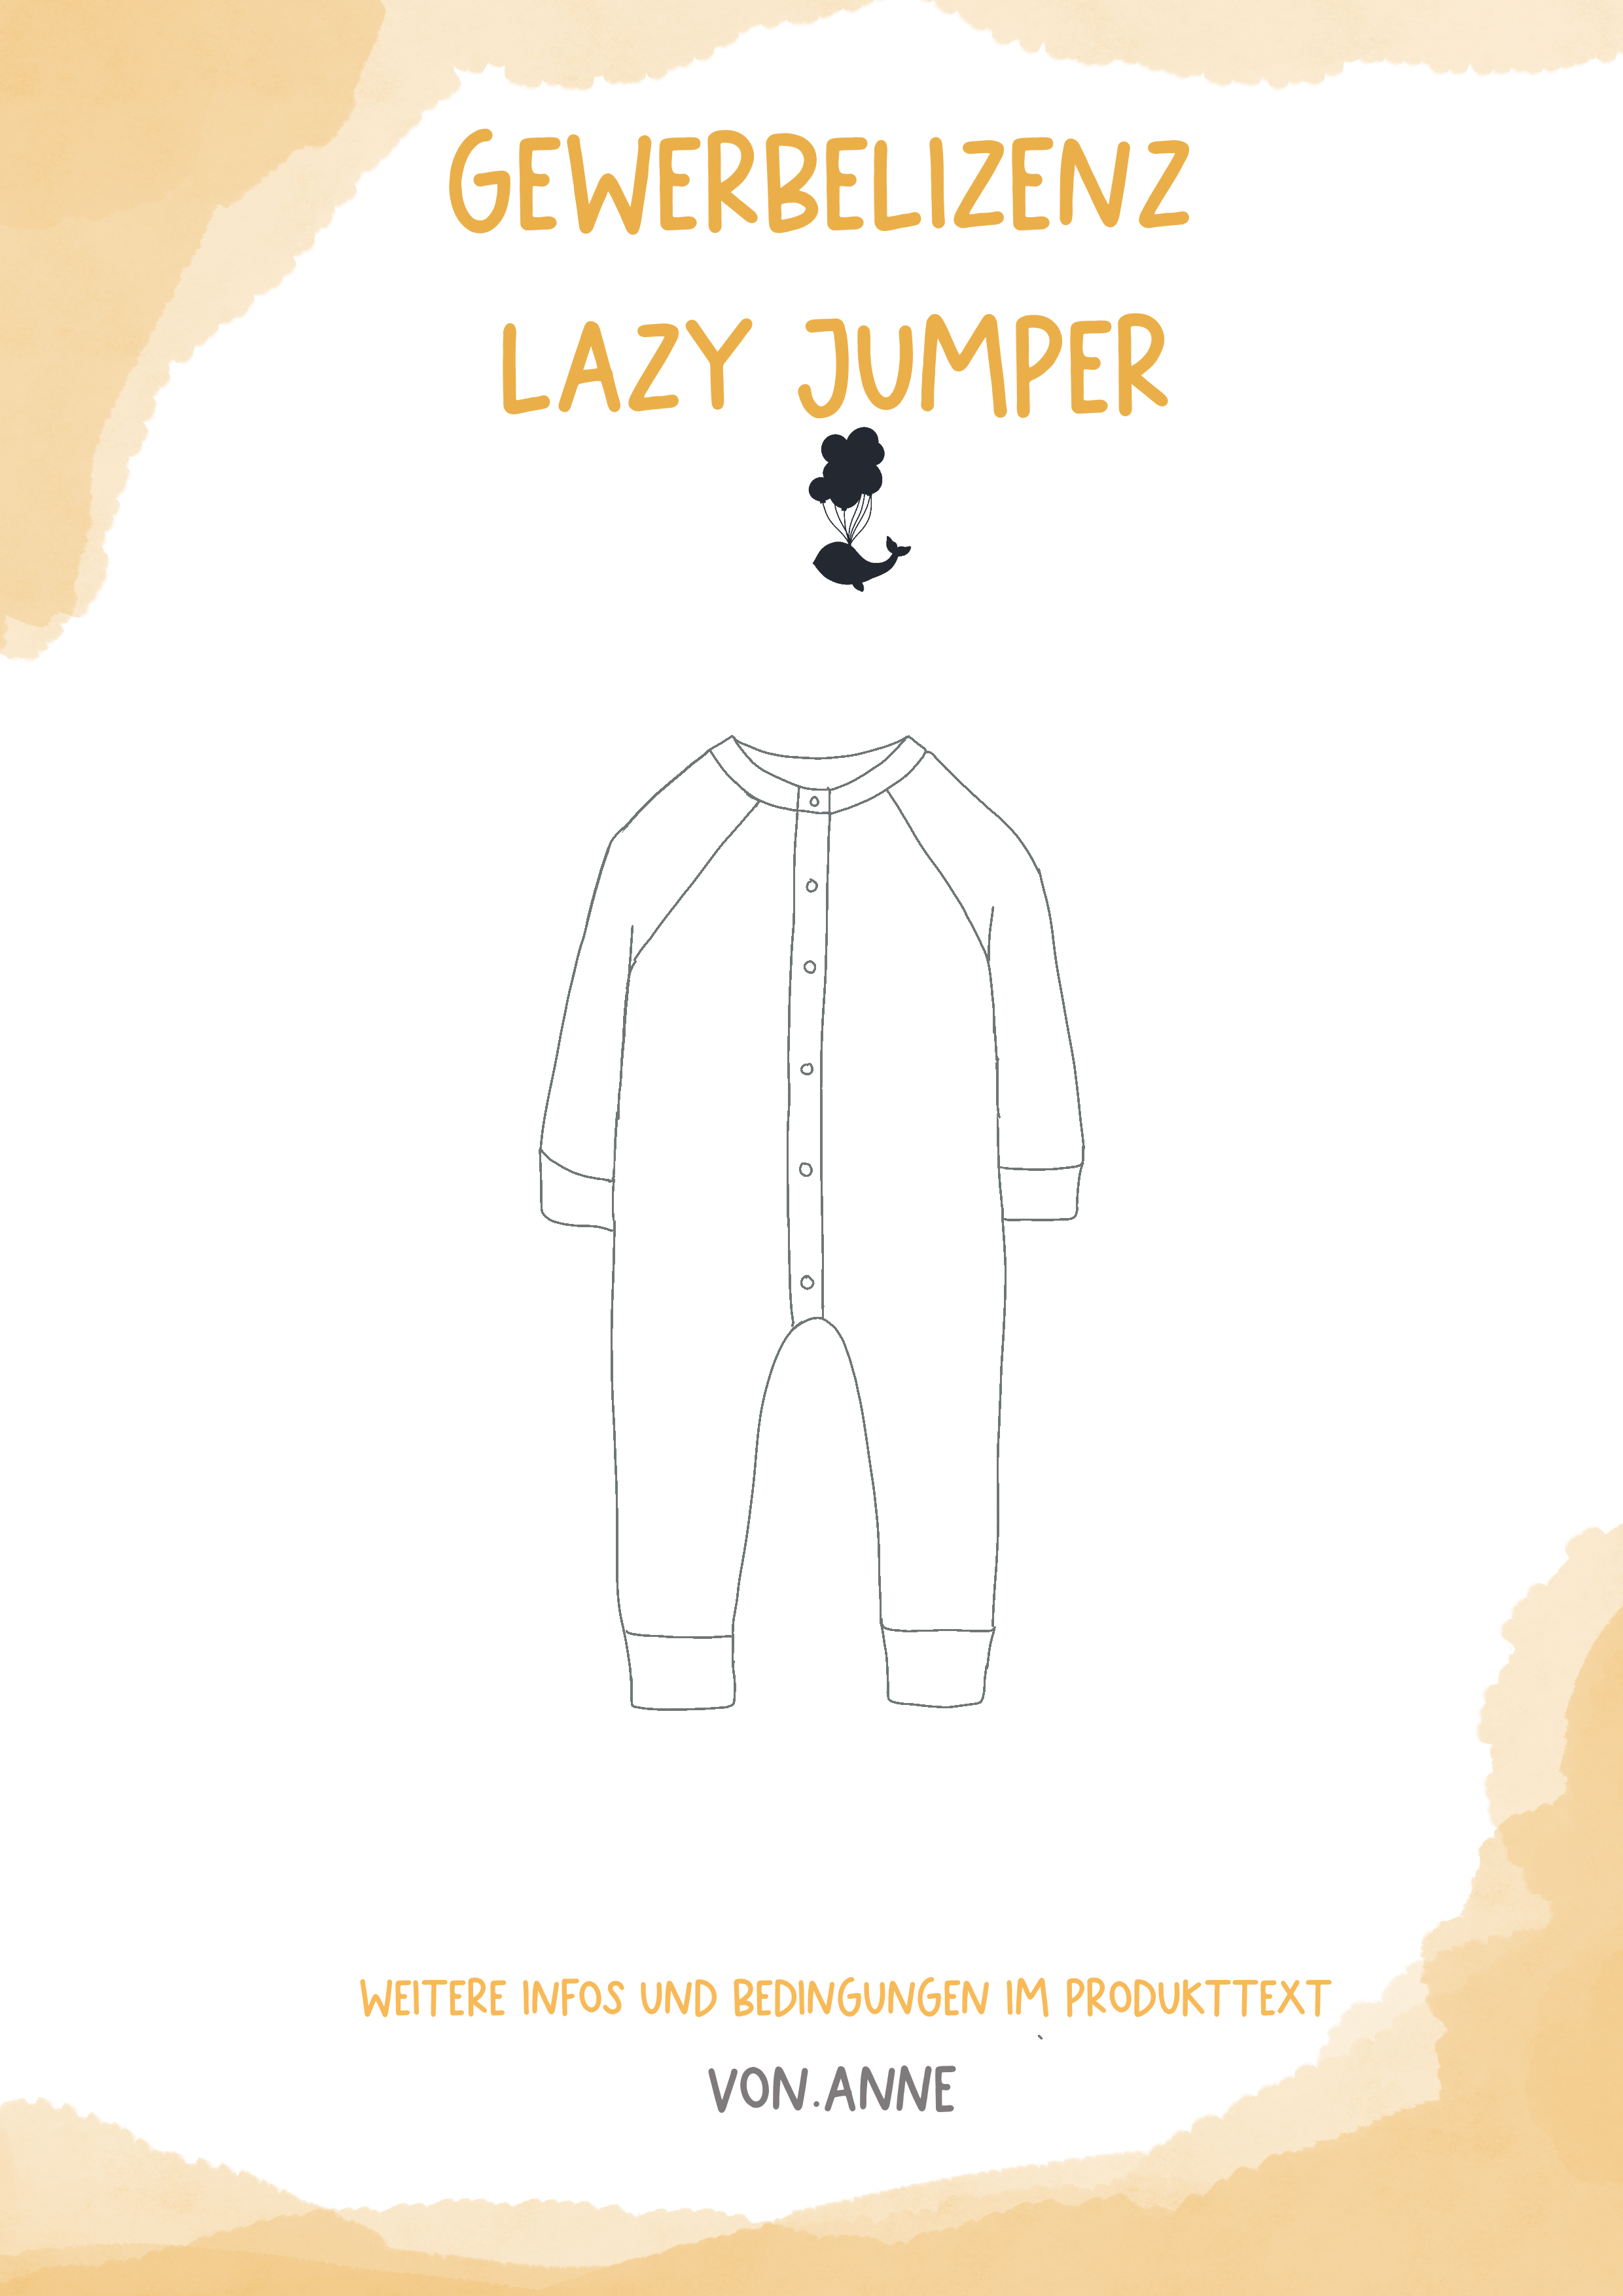 Gewerbelizenz - Lazy Jumper